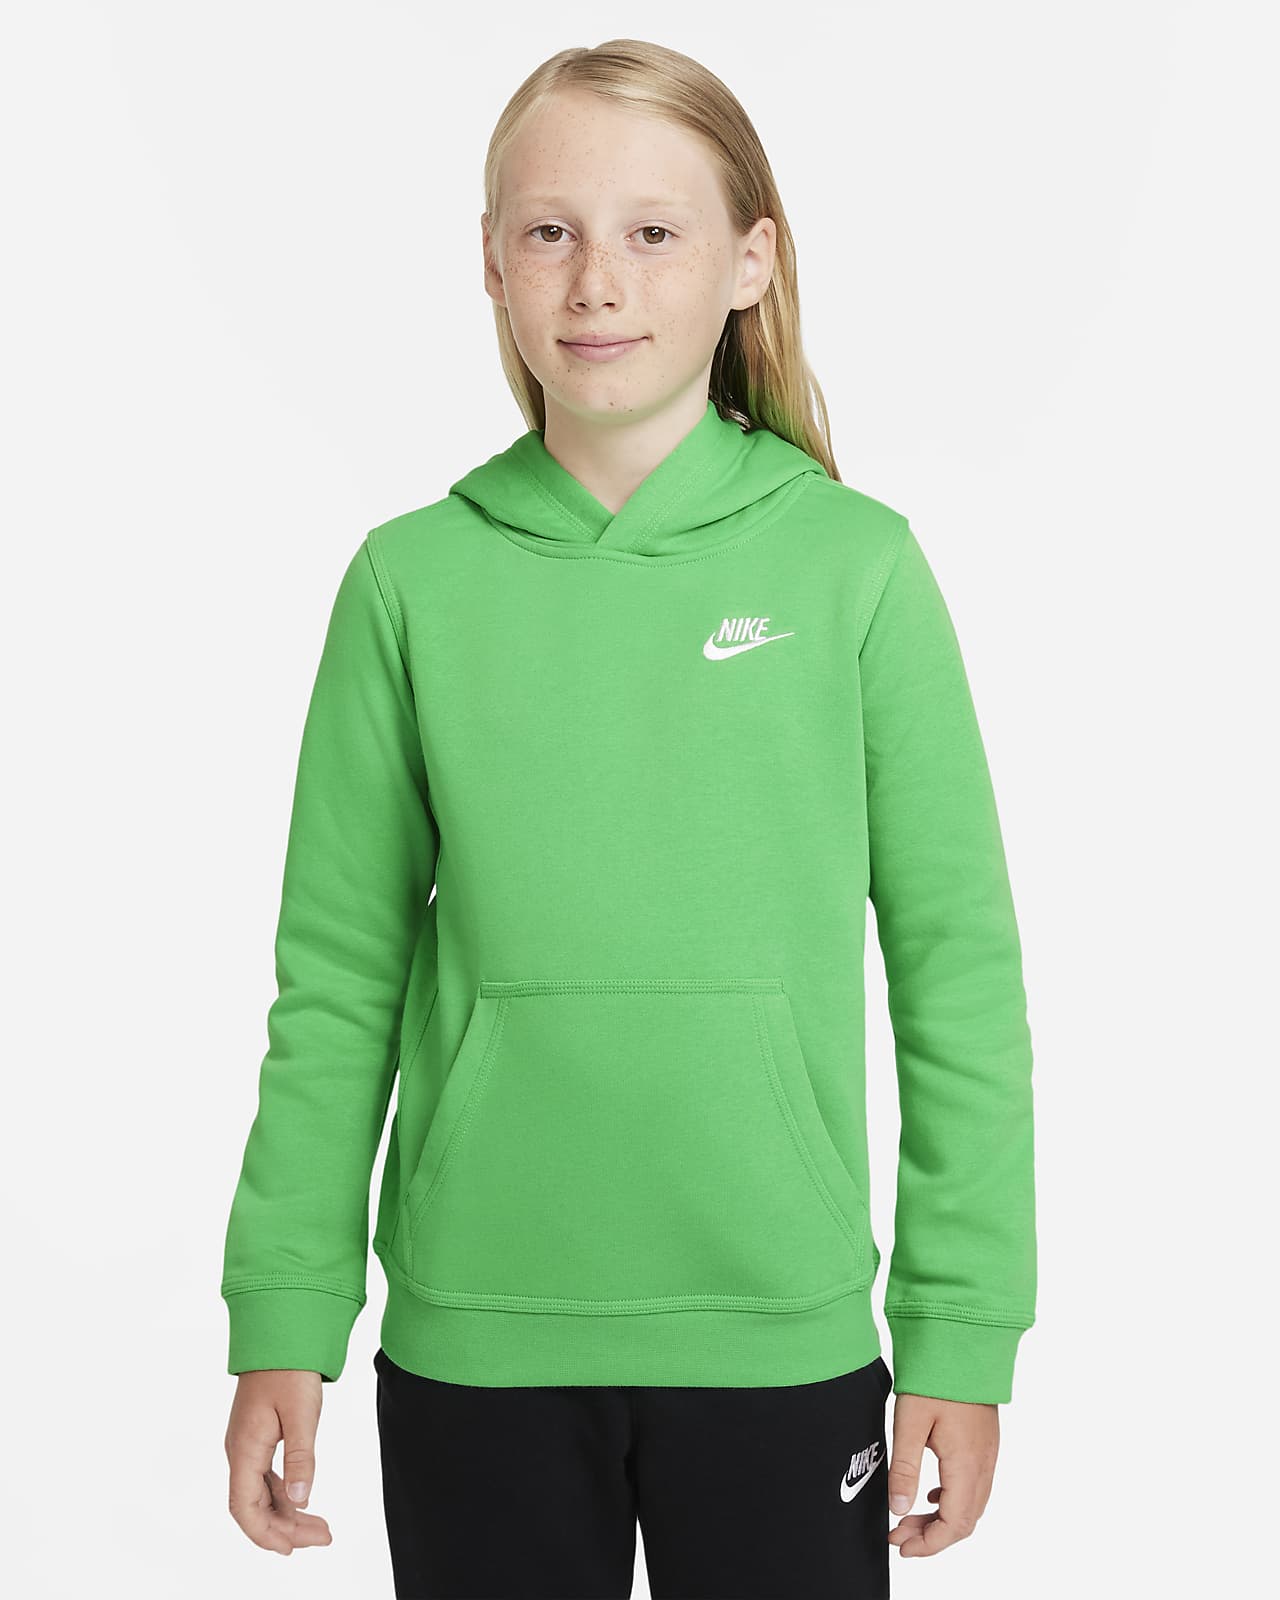 Nike Sportswear Club new Zealand, SAVE 38% - lutheranems.com